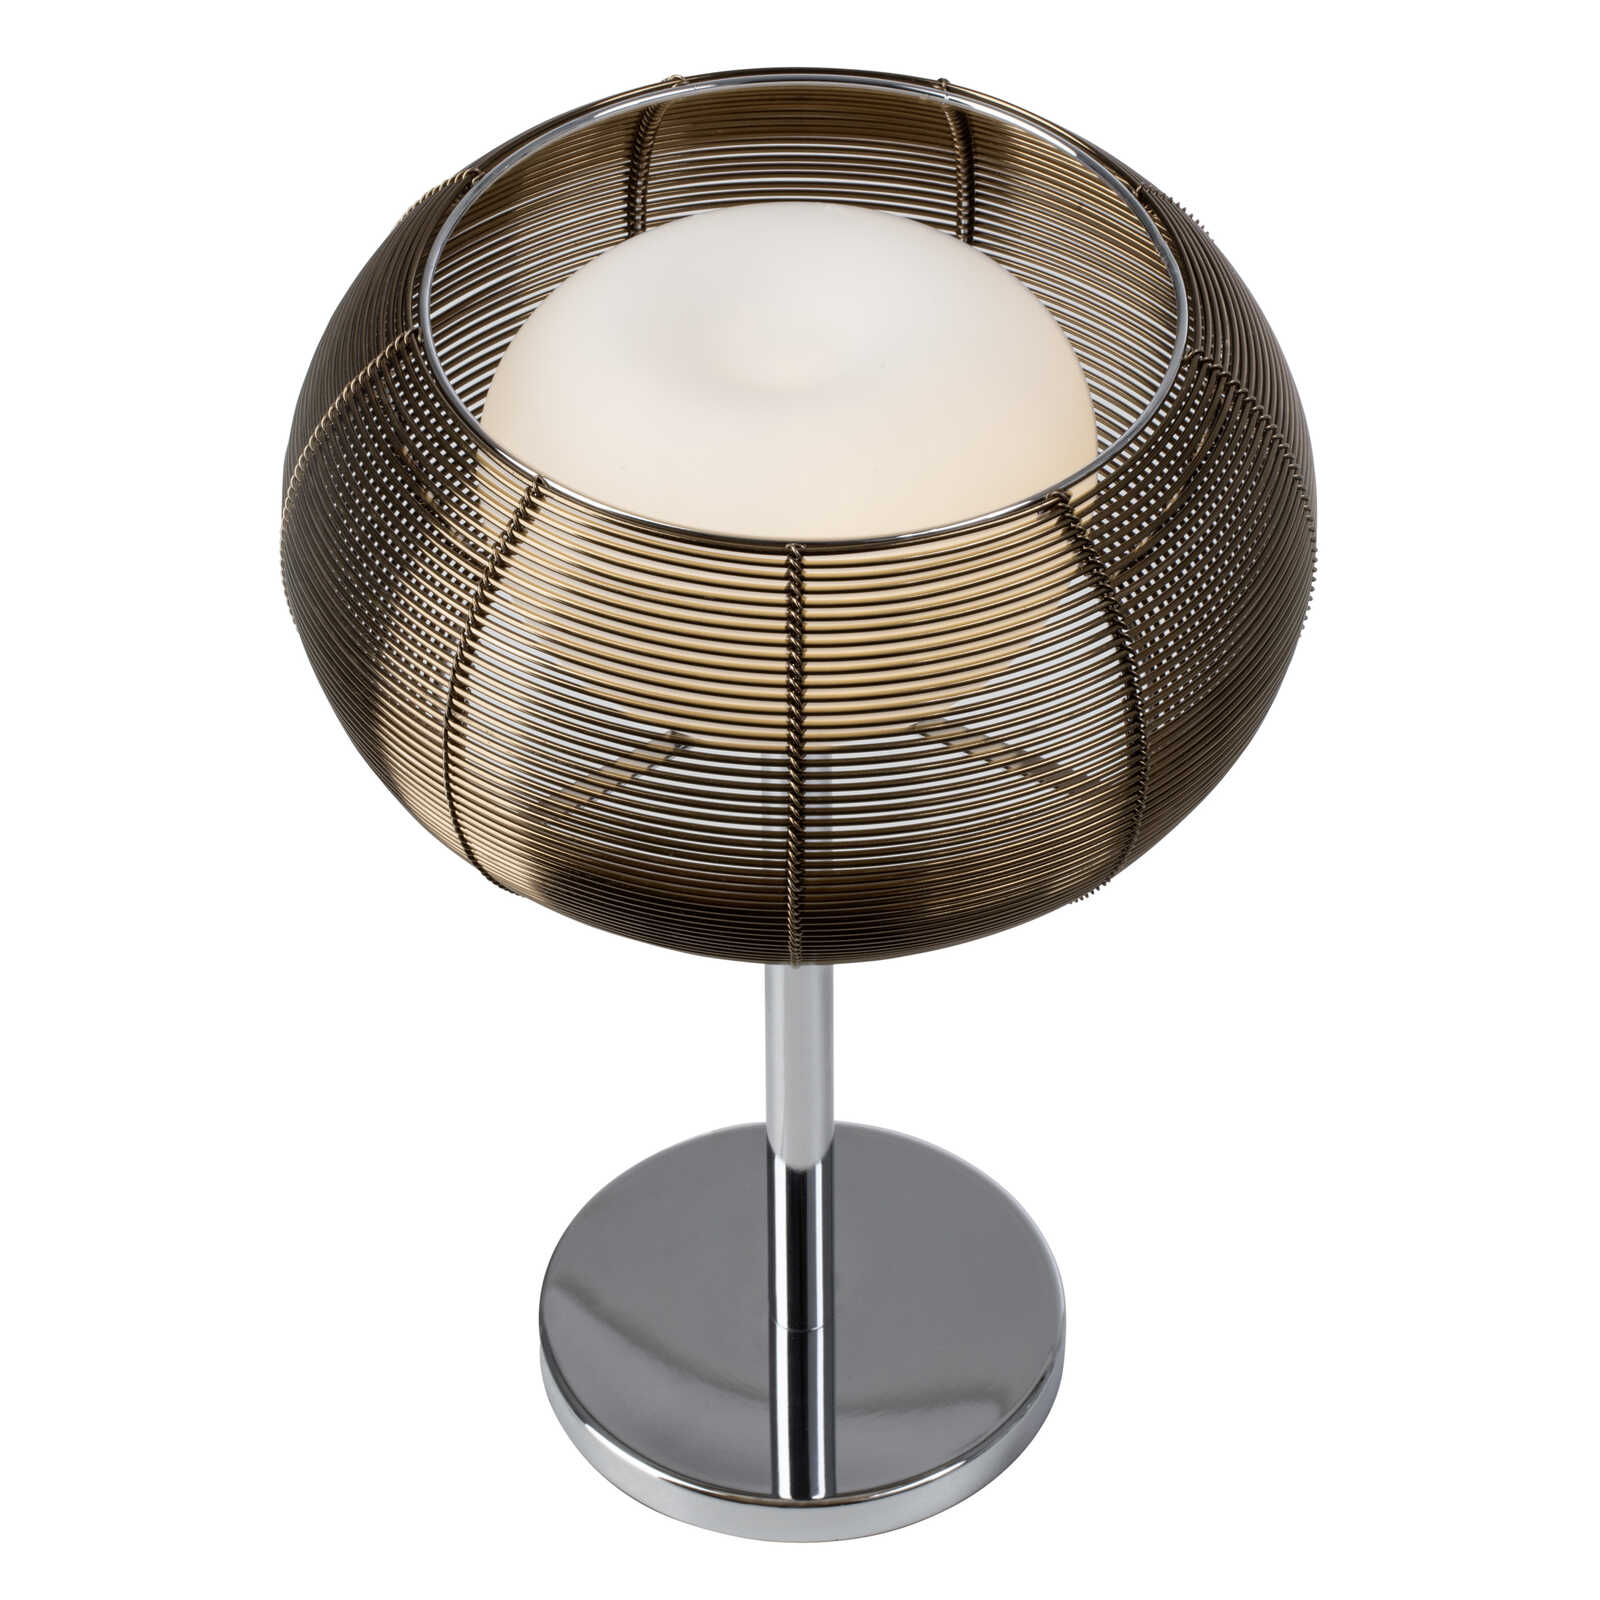             Glazen tafellamp - Maxime 4 - Bruin
        